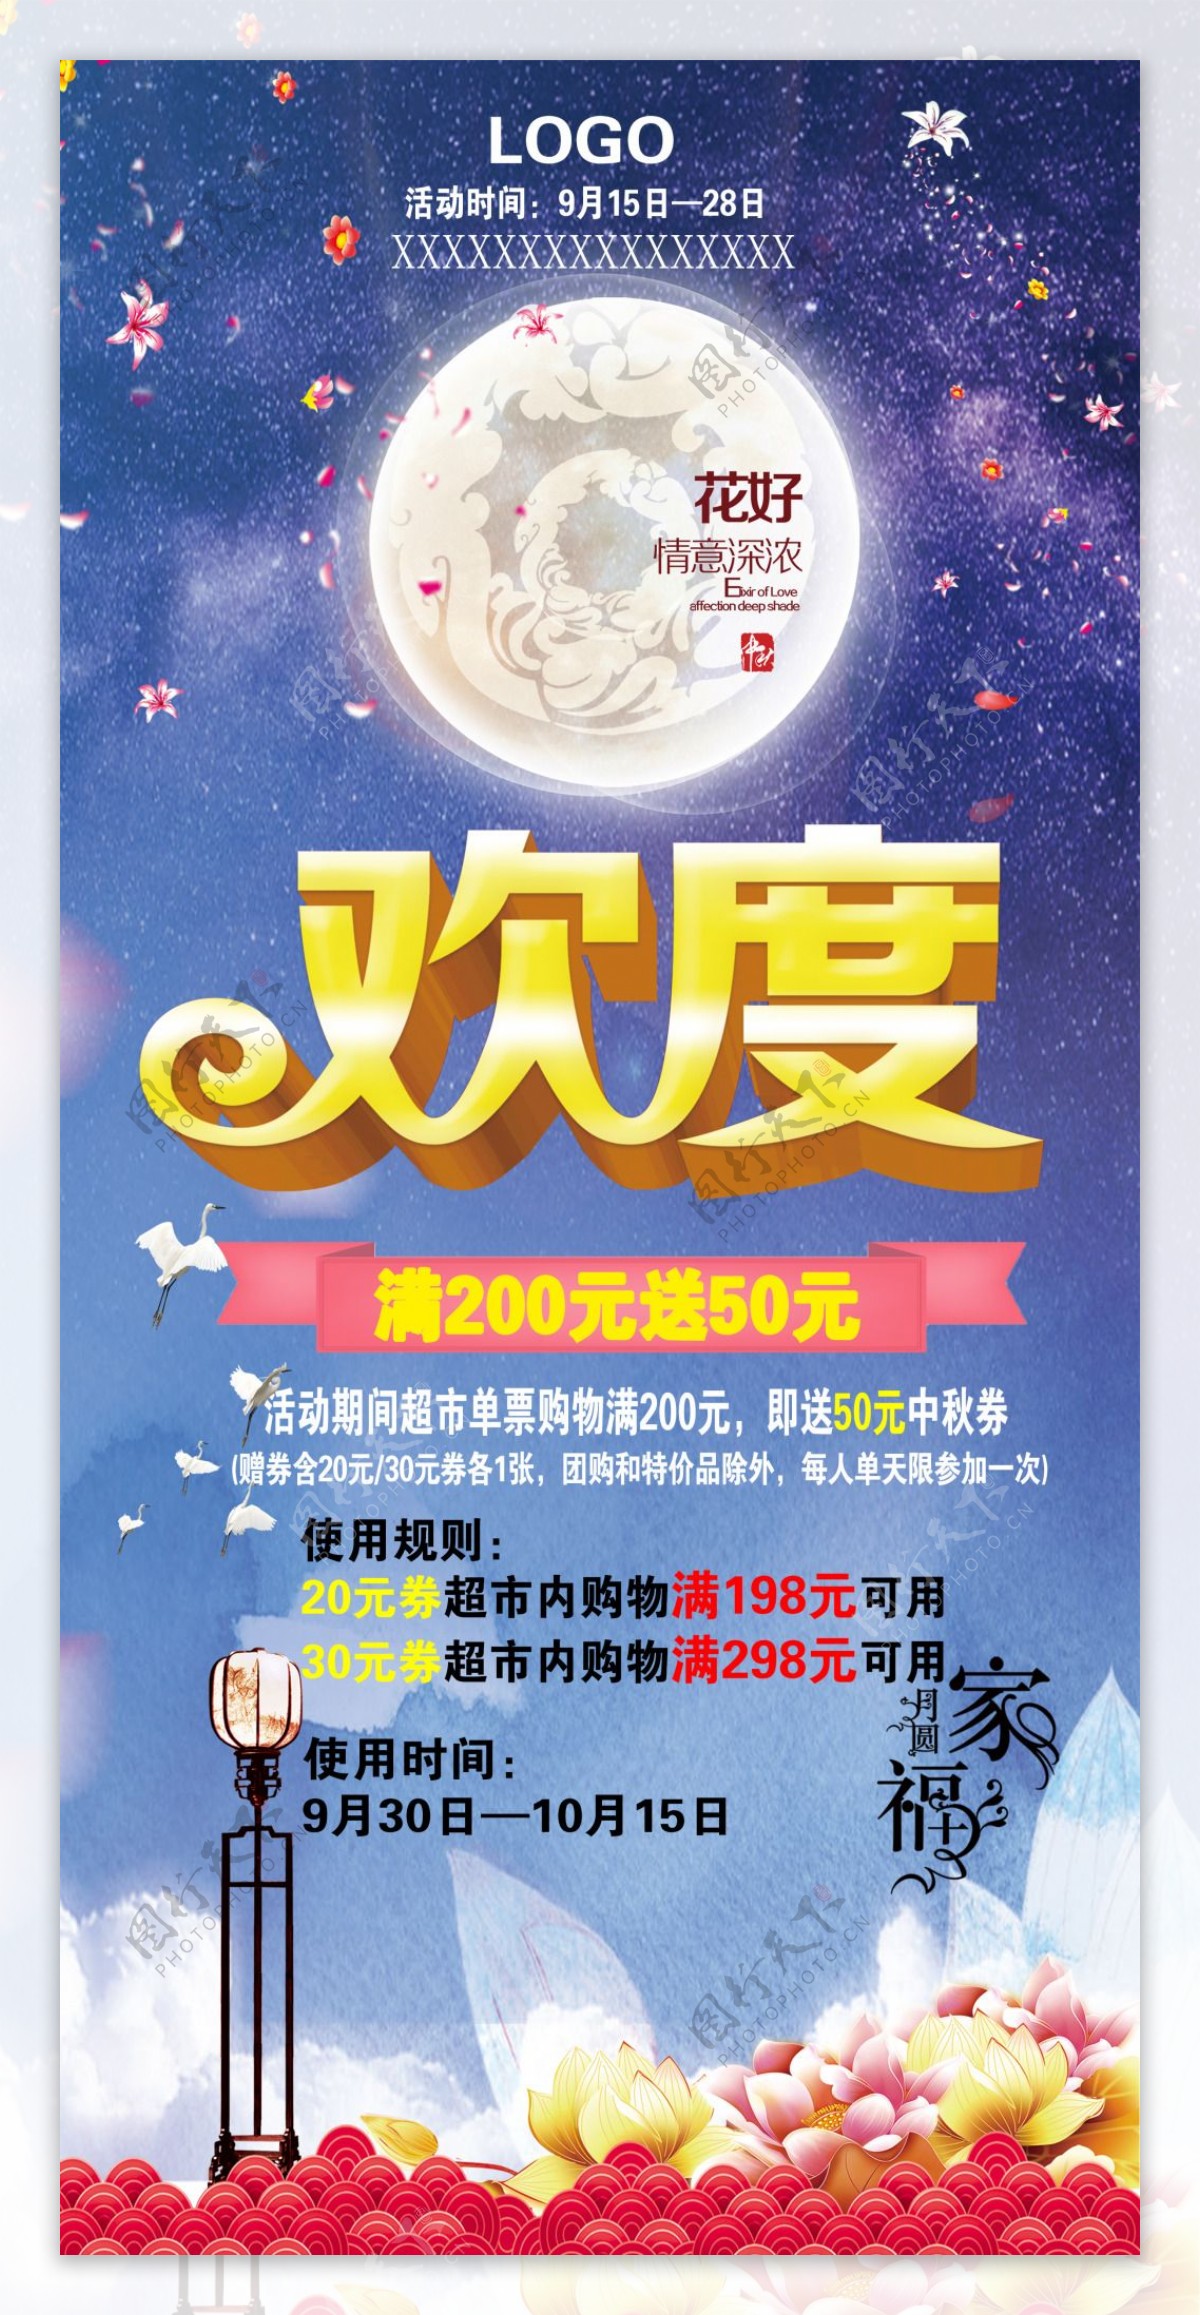 2018欢度中秋节海报设计PSD模板